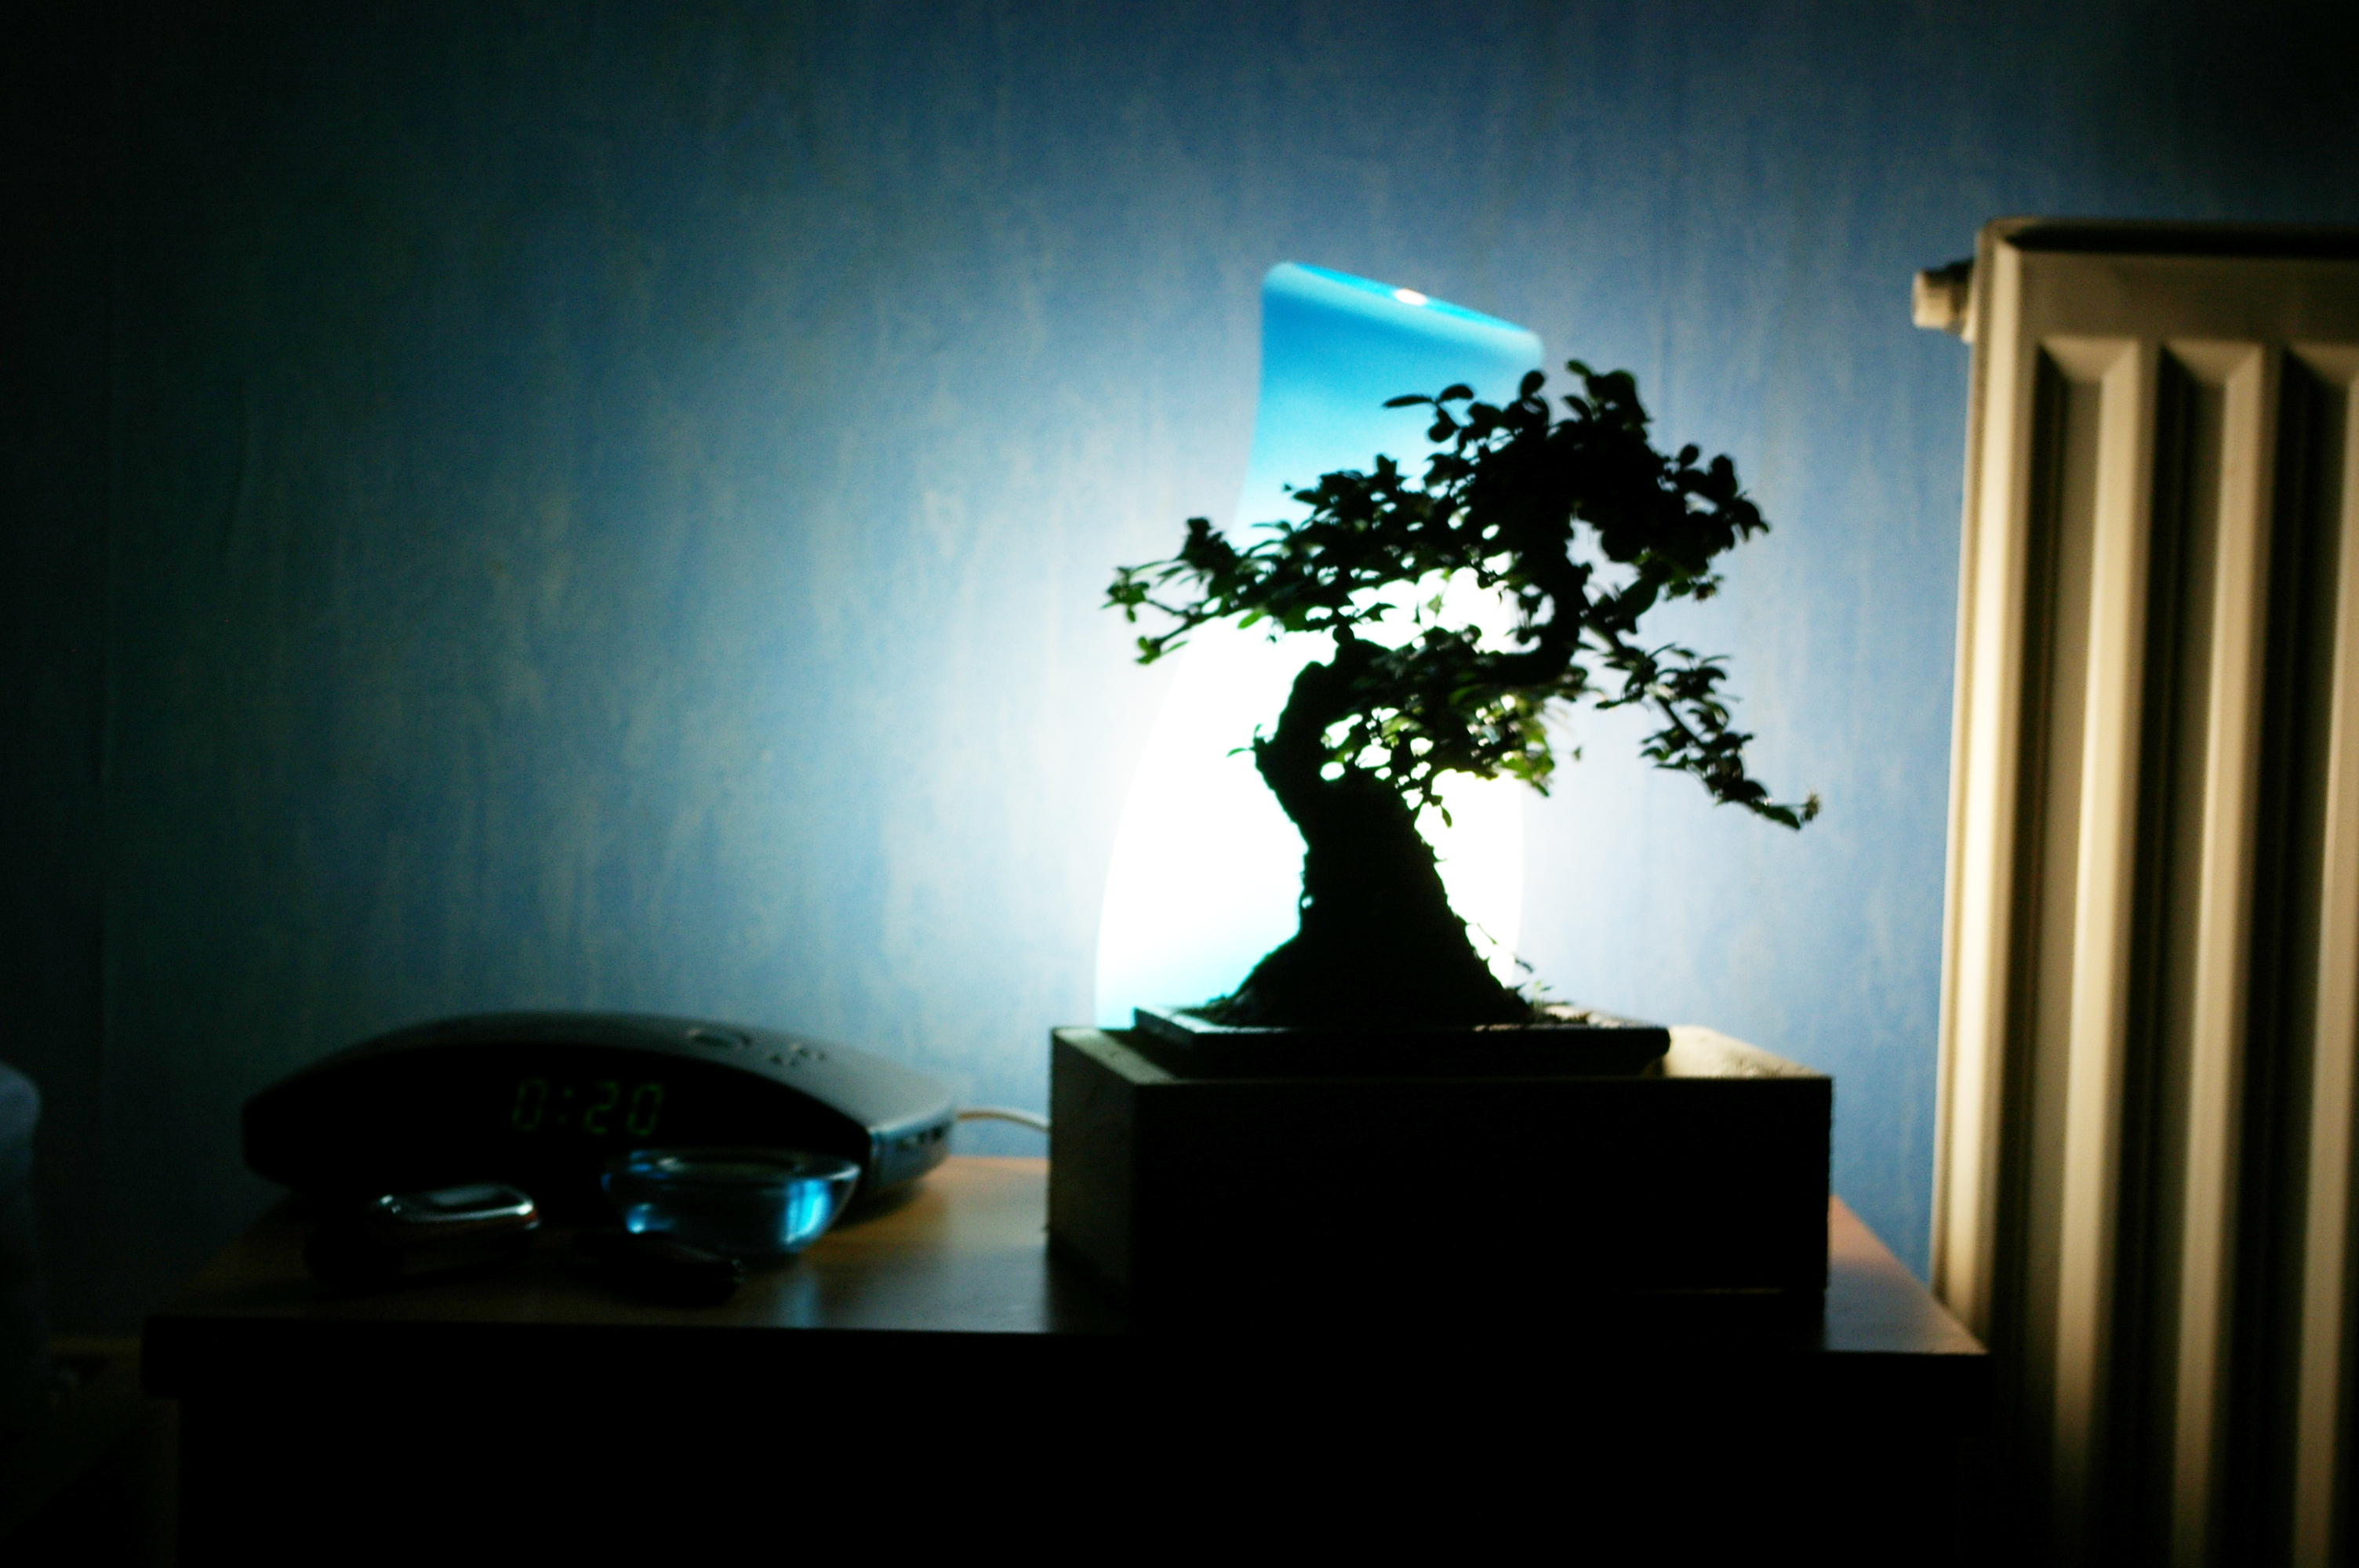 Banzai tree in the room, Bansai, Banzai, Chamber, Dark, HQ Photo